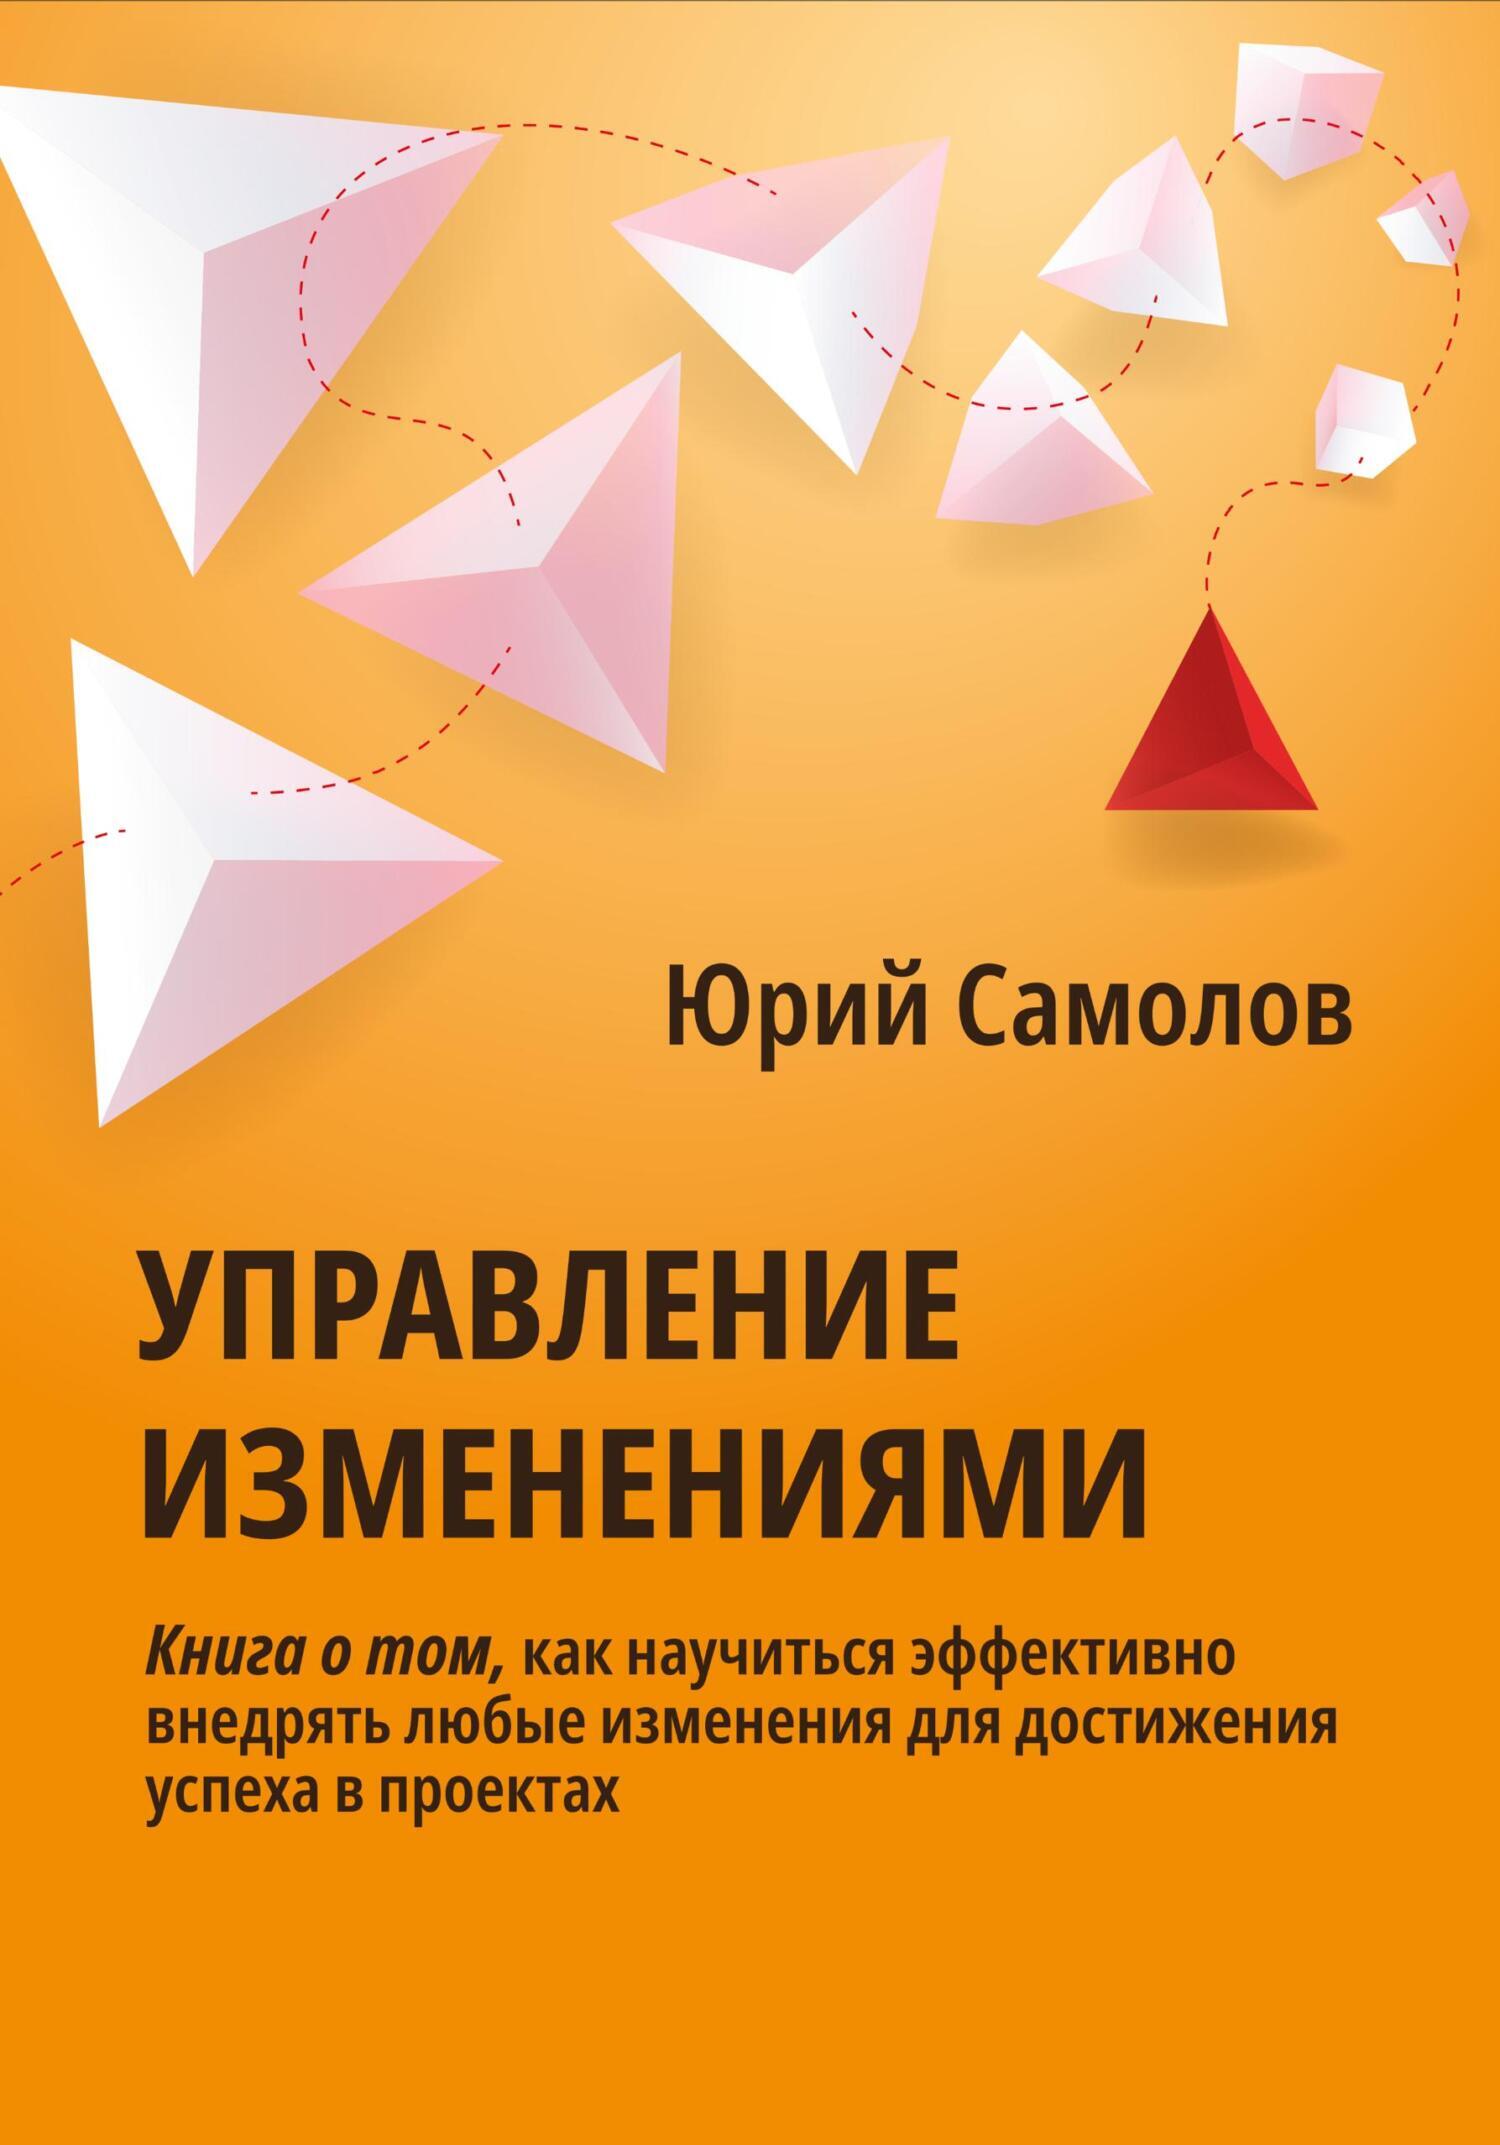 Книга  Управление изменениями созданная Юрий Самолов может относится к жанру бизнес-процессы, просто о бизнесе, управление персоналом. Стоимость электронной книги Управление изменениями с идентификатором 68848323 составляет 199.00 руб.